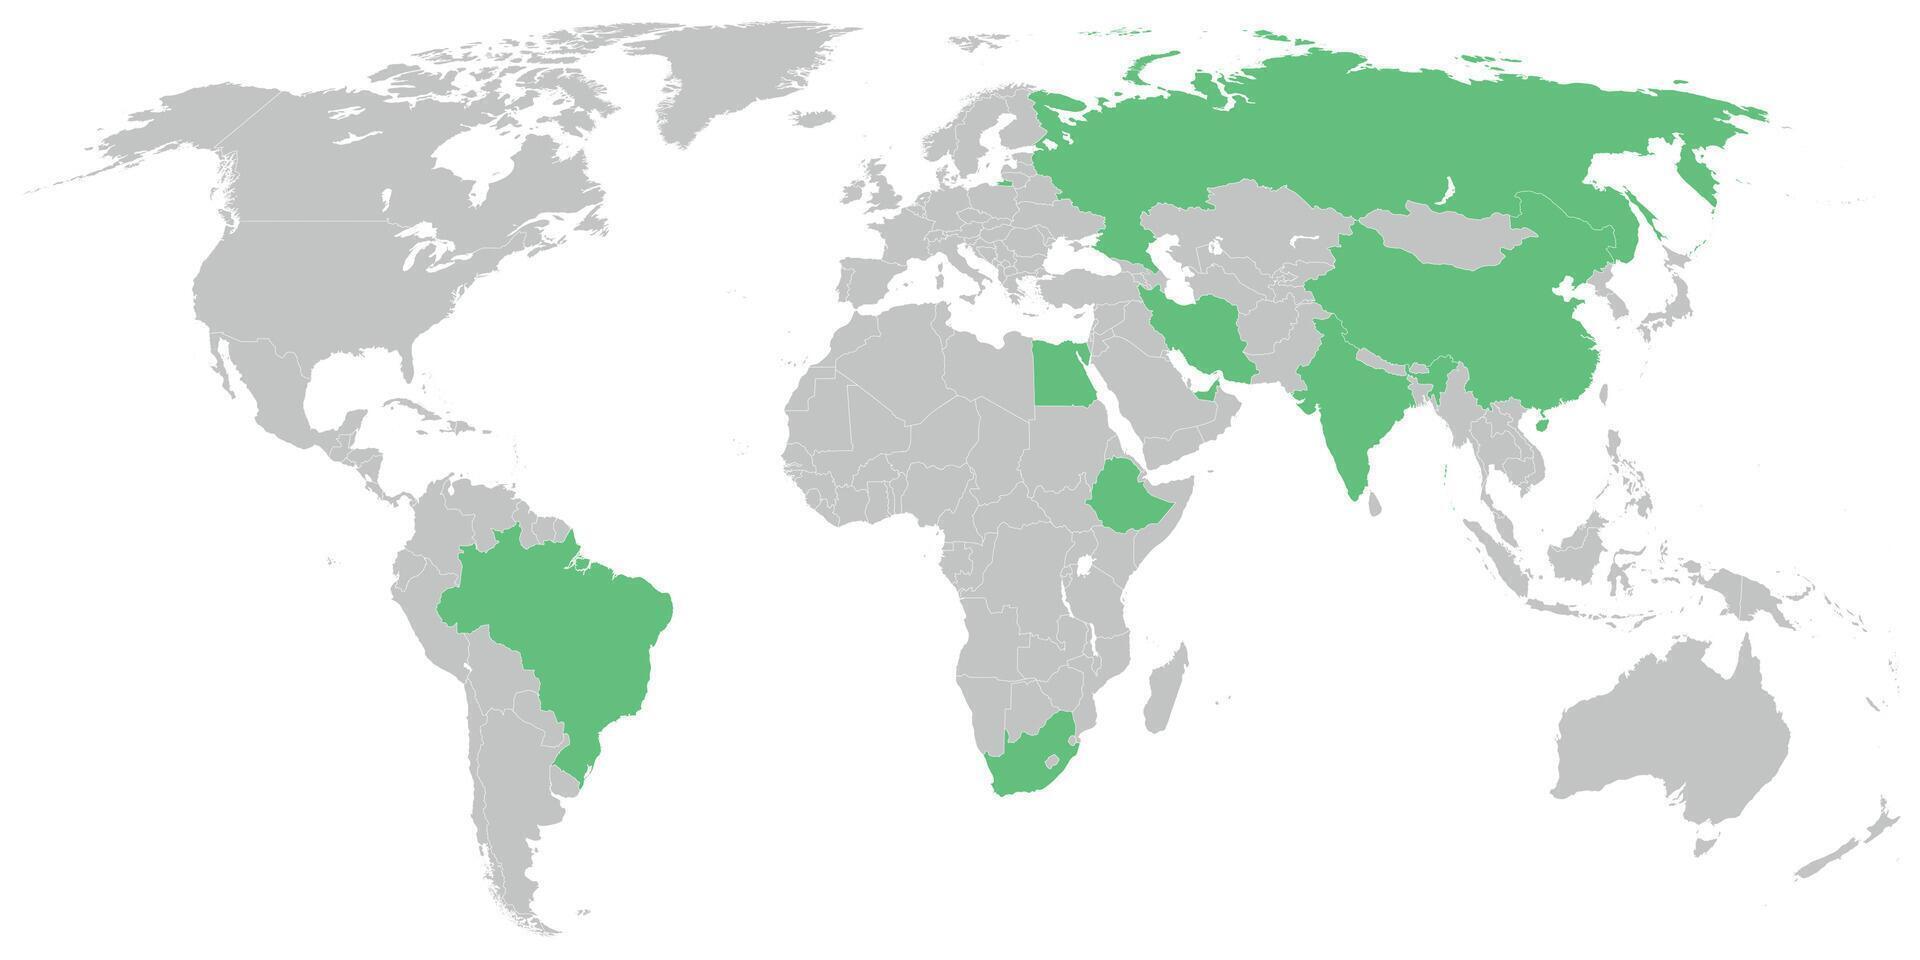 brics membro estados em mapa do a mundo vetor